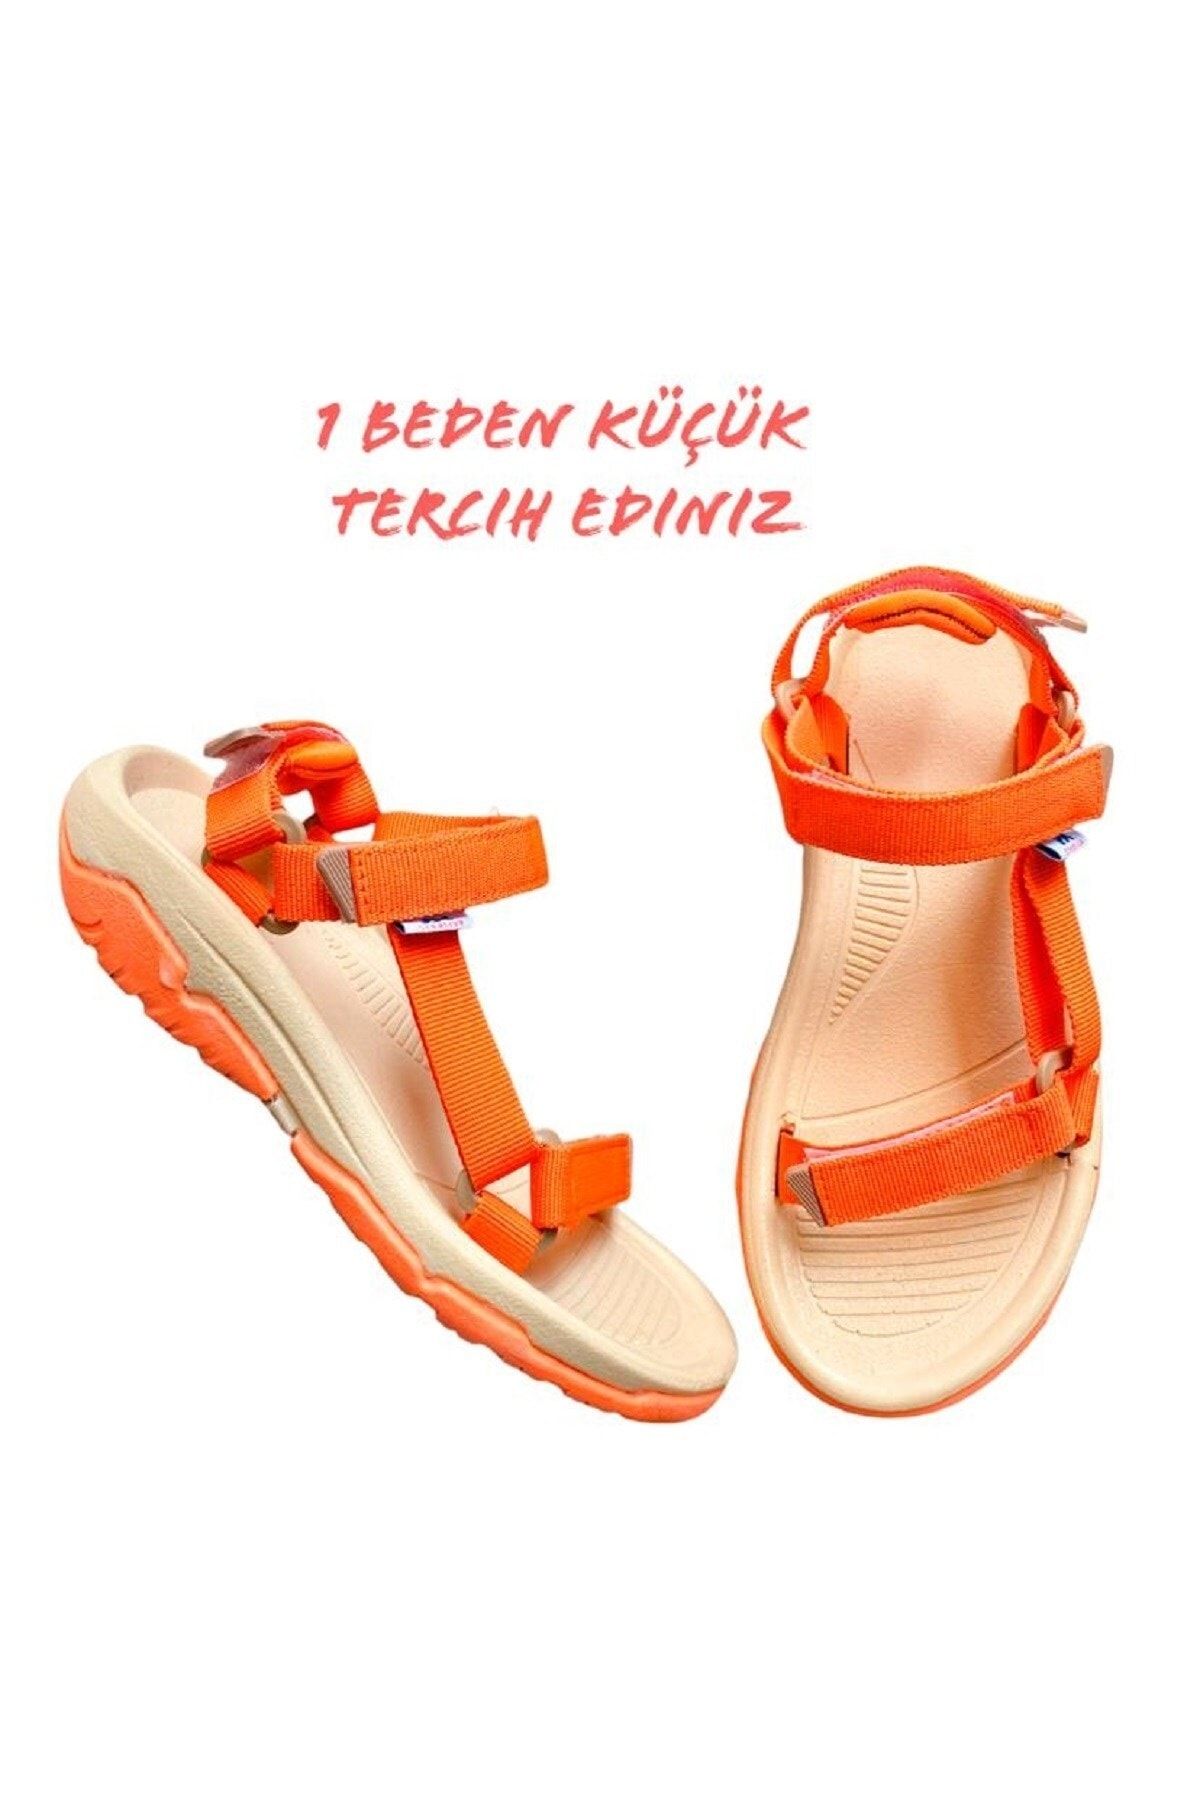 ALTUNTAŞ Fx Kaymaz Taban Cırt Cırtlı Çocuk Spor Sandalet Modeli - Krem Oranj ( Geniş Kalıp)